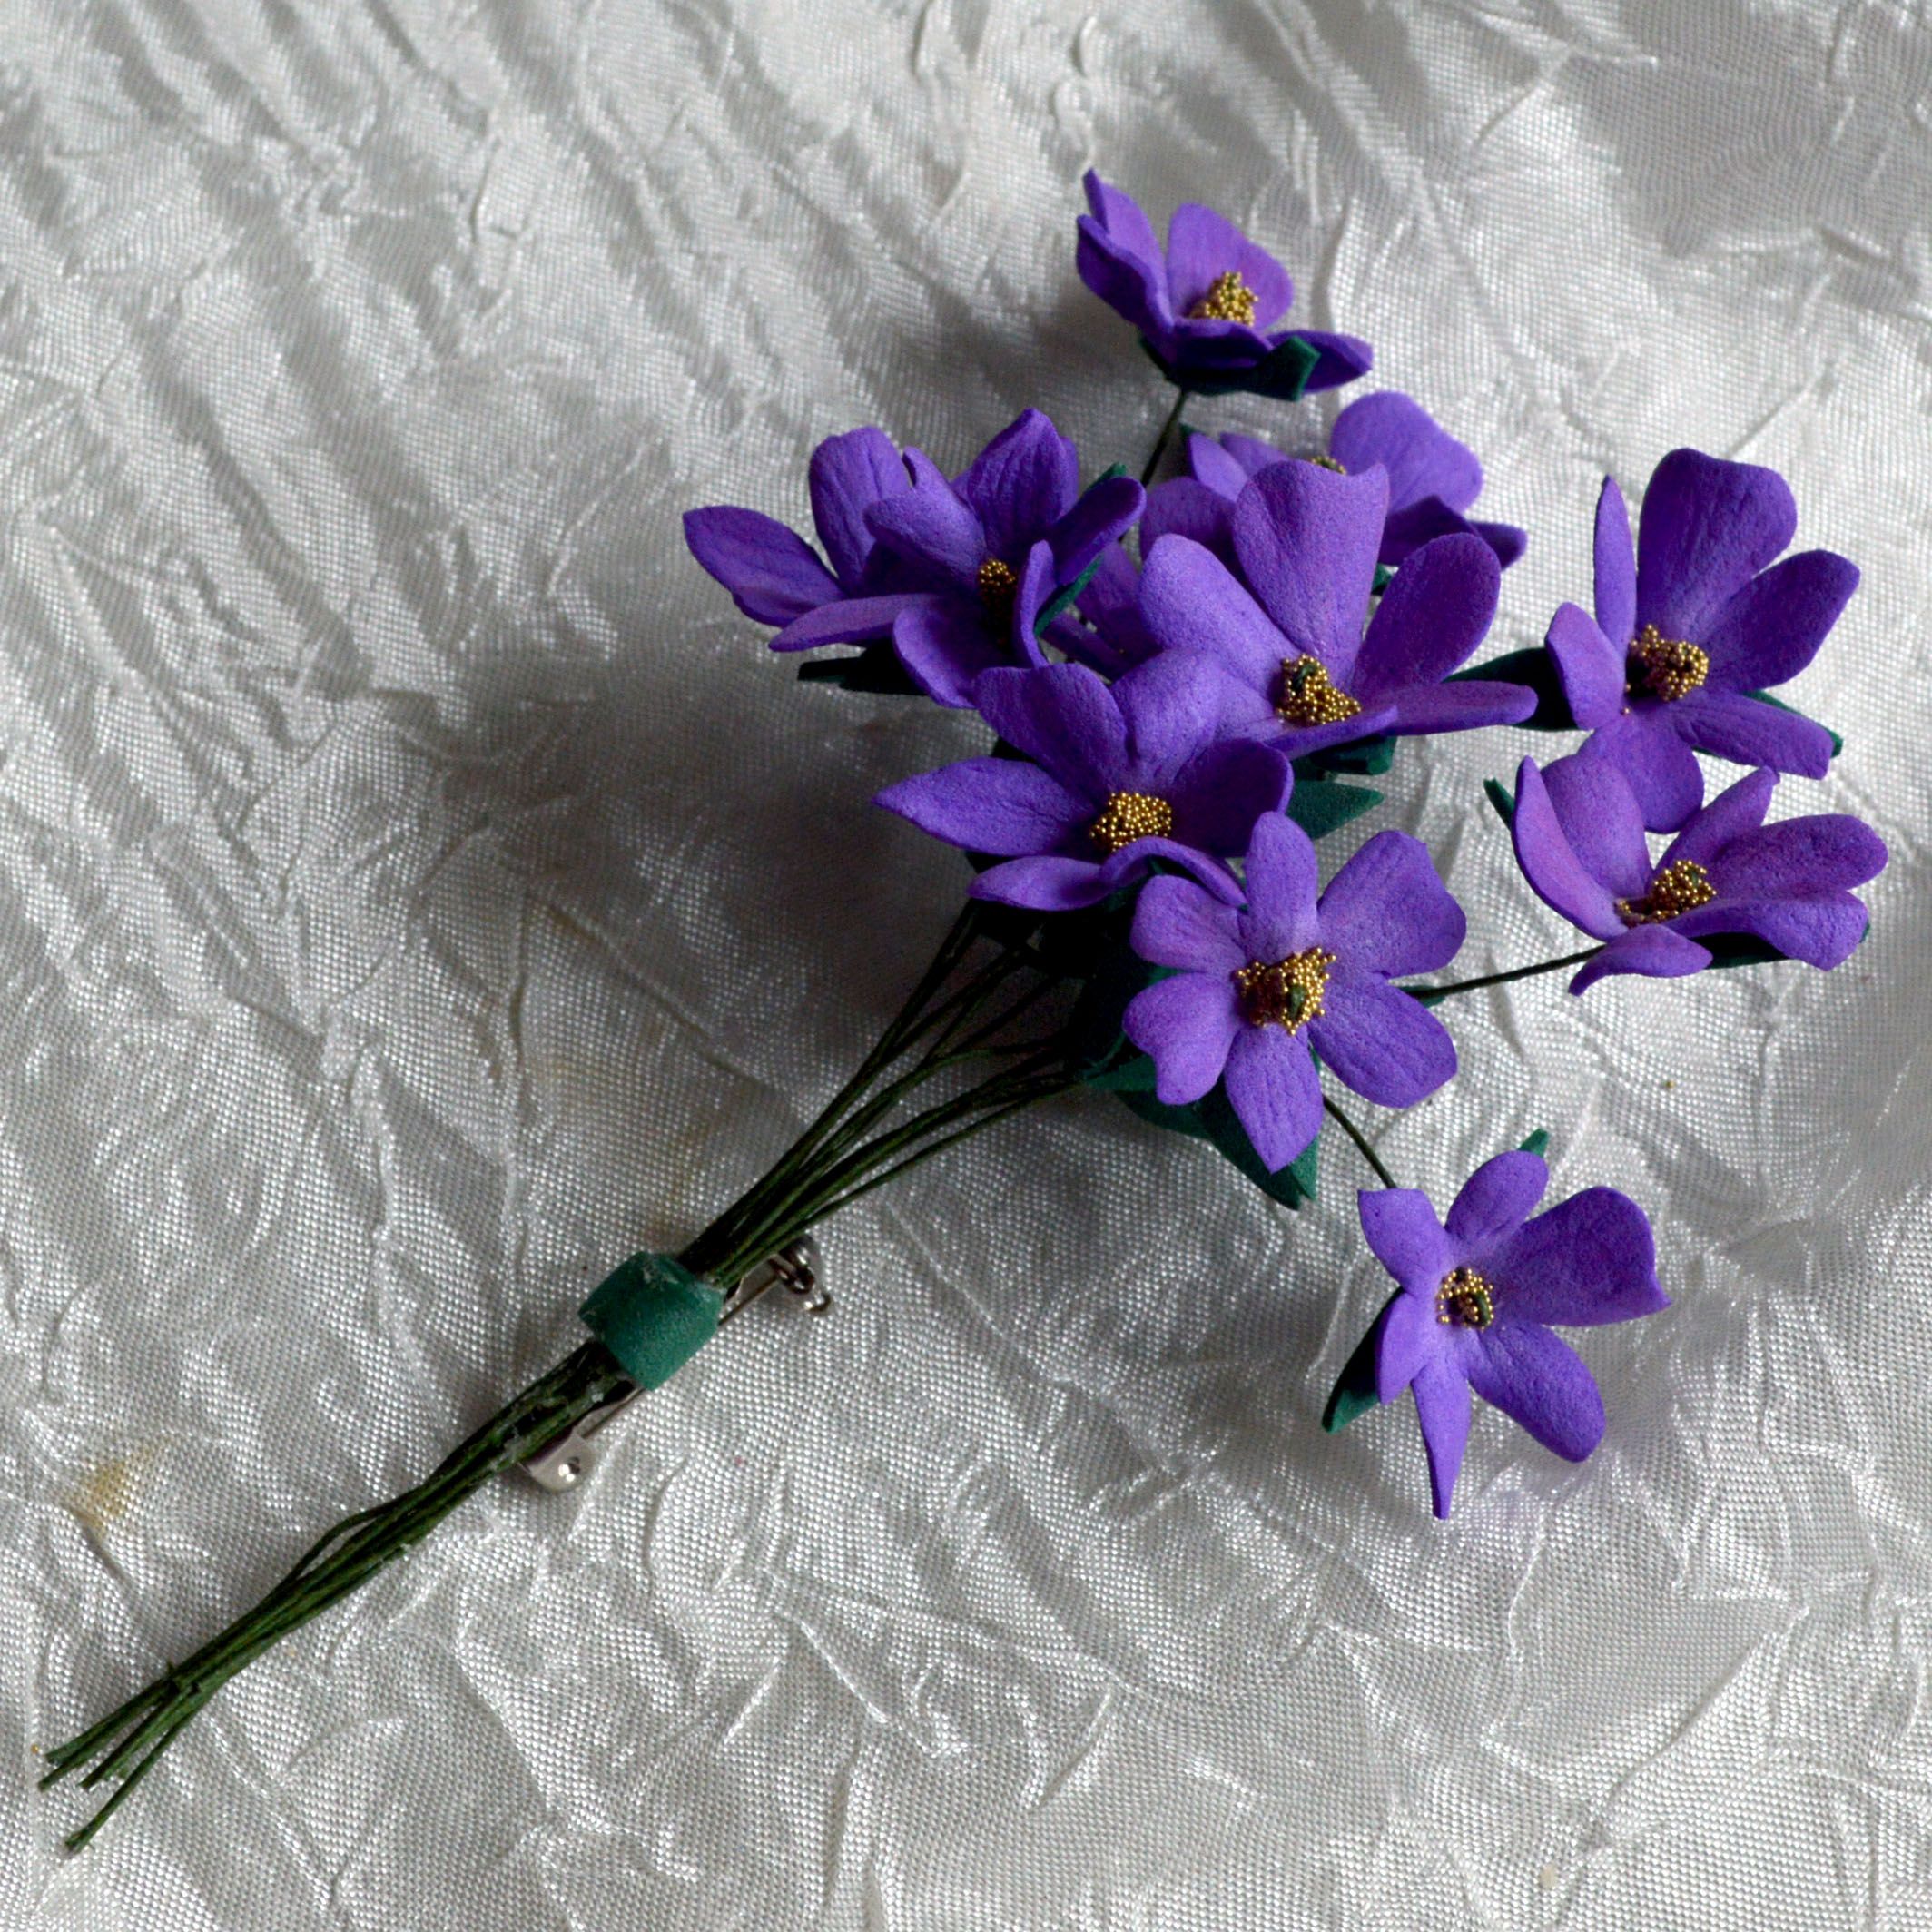 Цветы из фома маленькие: делаем мелкие цветочки своими руками по шаблонам, подробный мастер-класс с пошаговым описанием